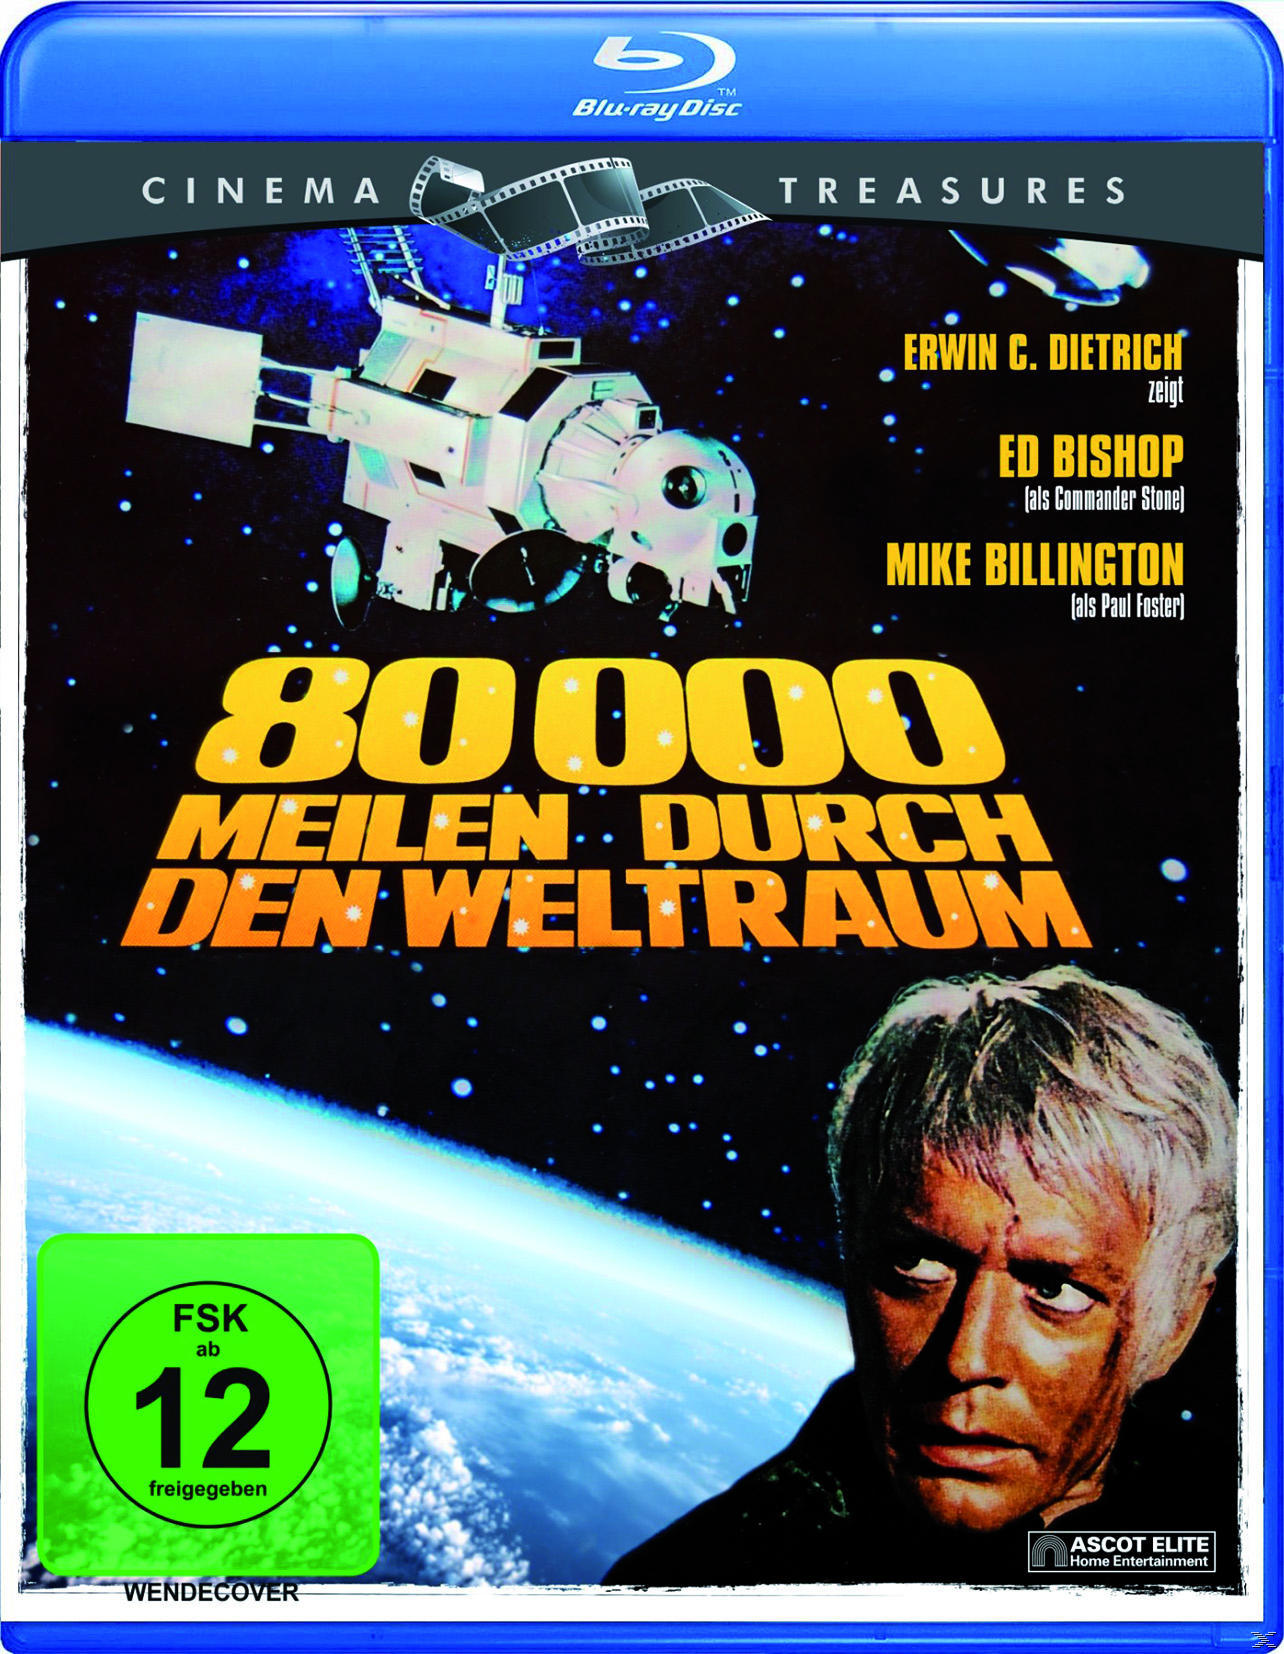 (Cinema Treasures) Blu-ray Meilen Weltraum 80.000 den durch